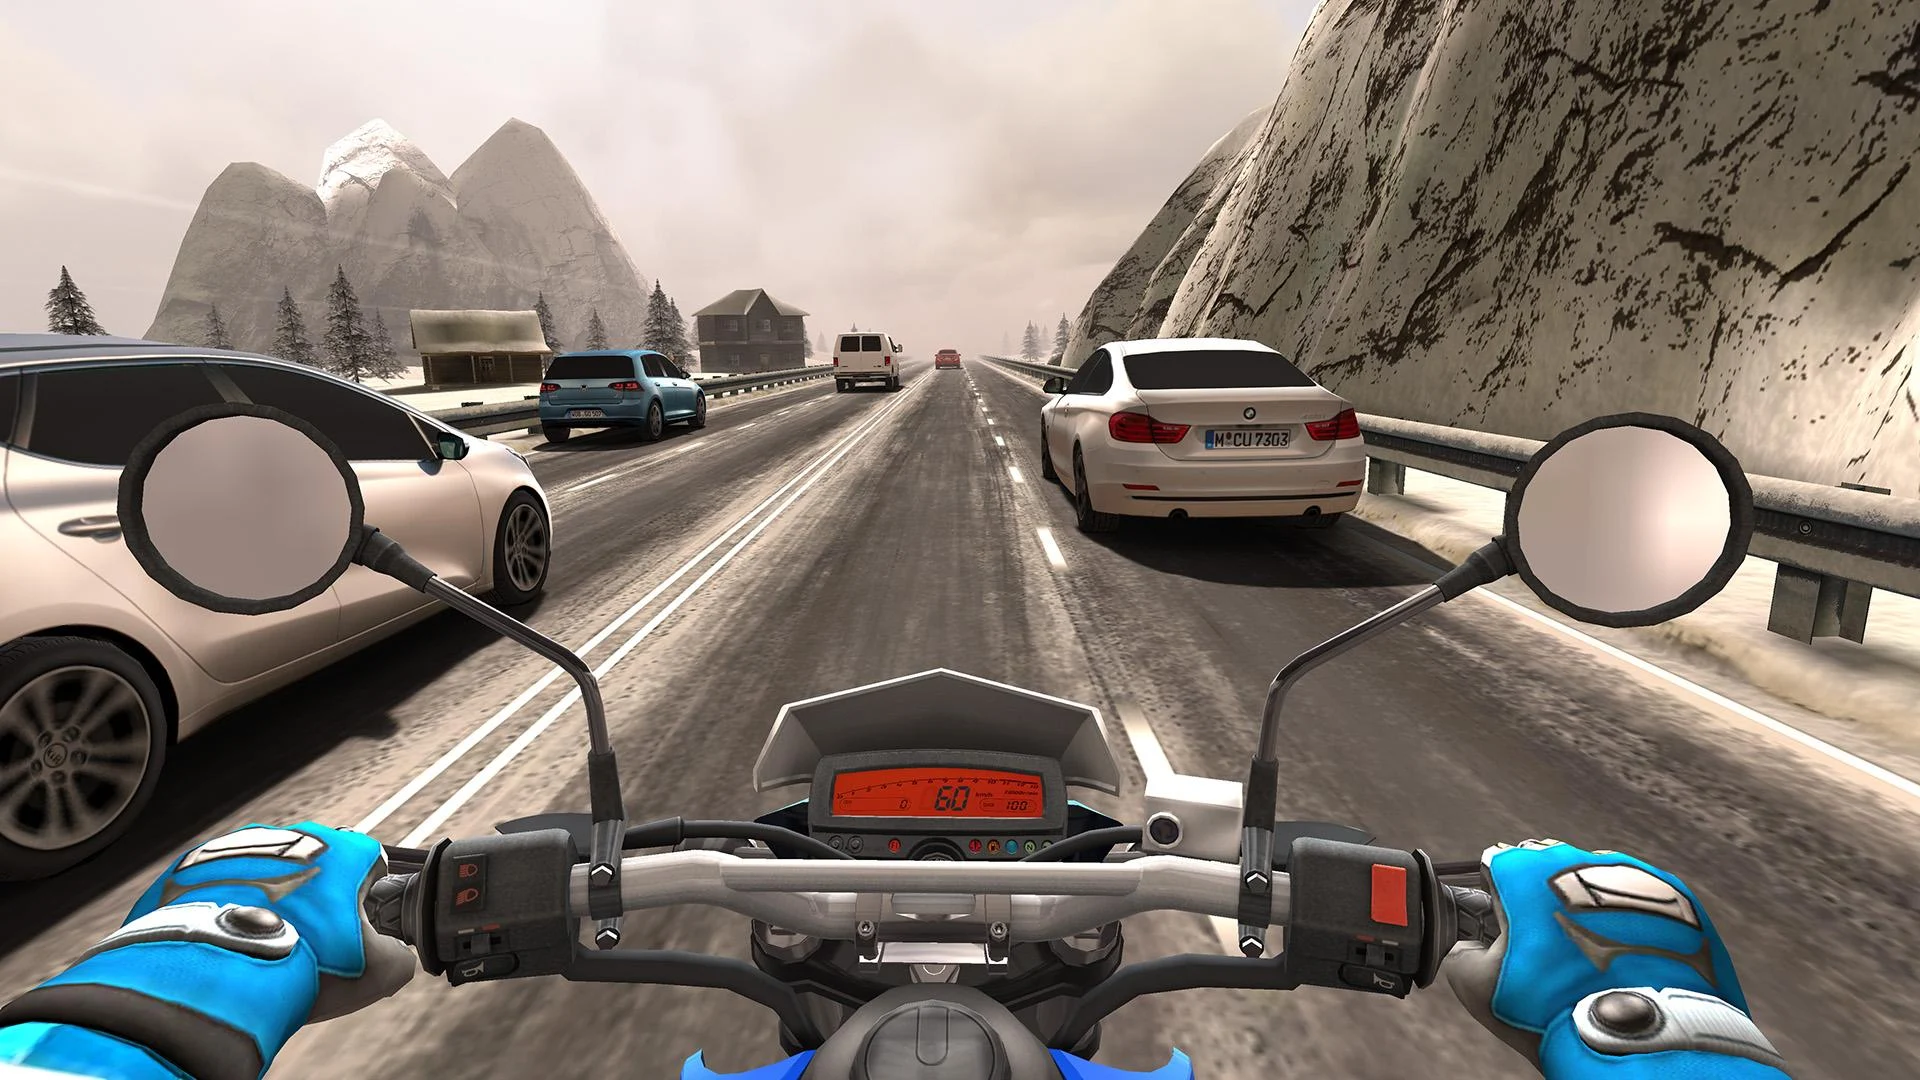 Traffic Rider game APK